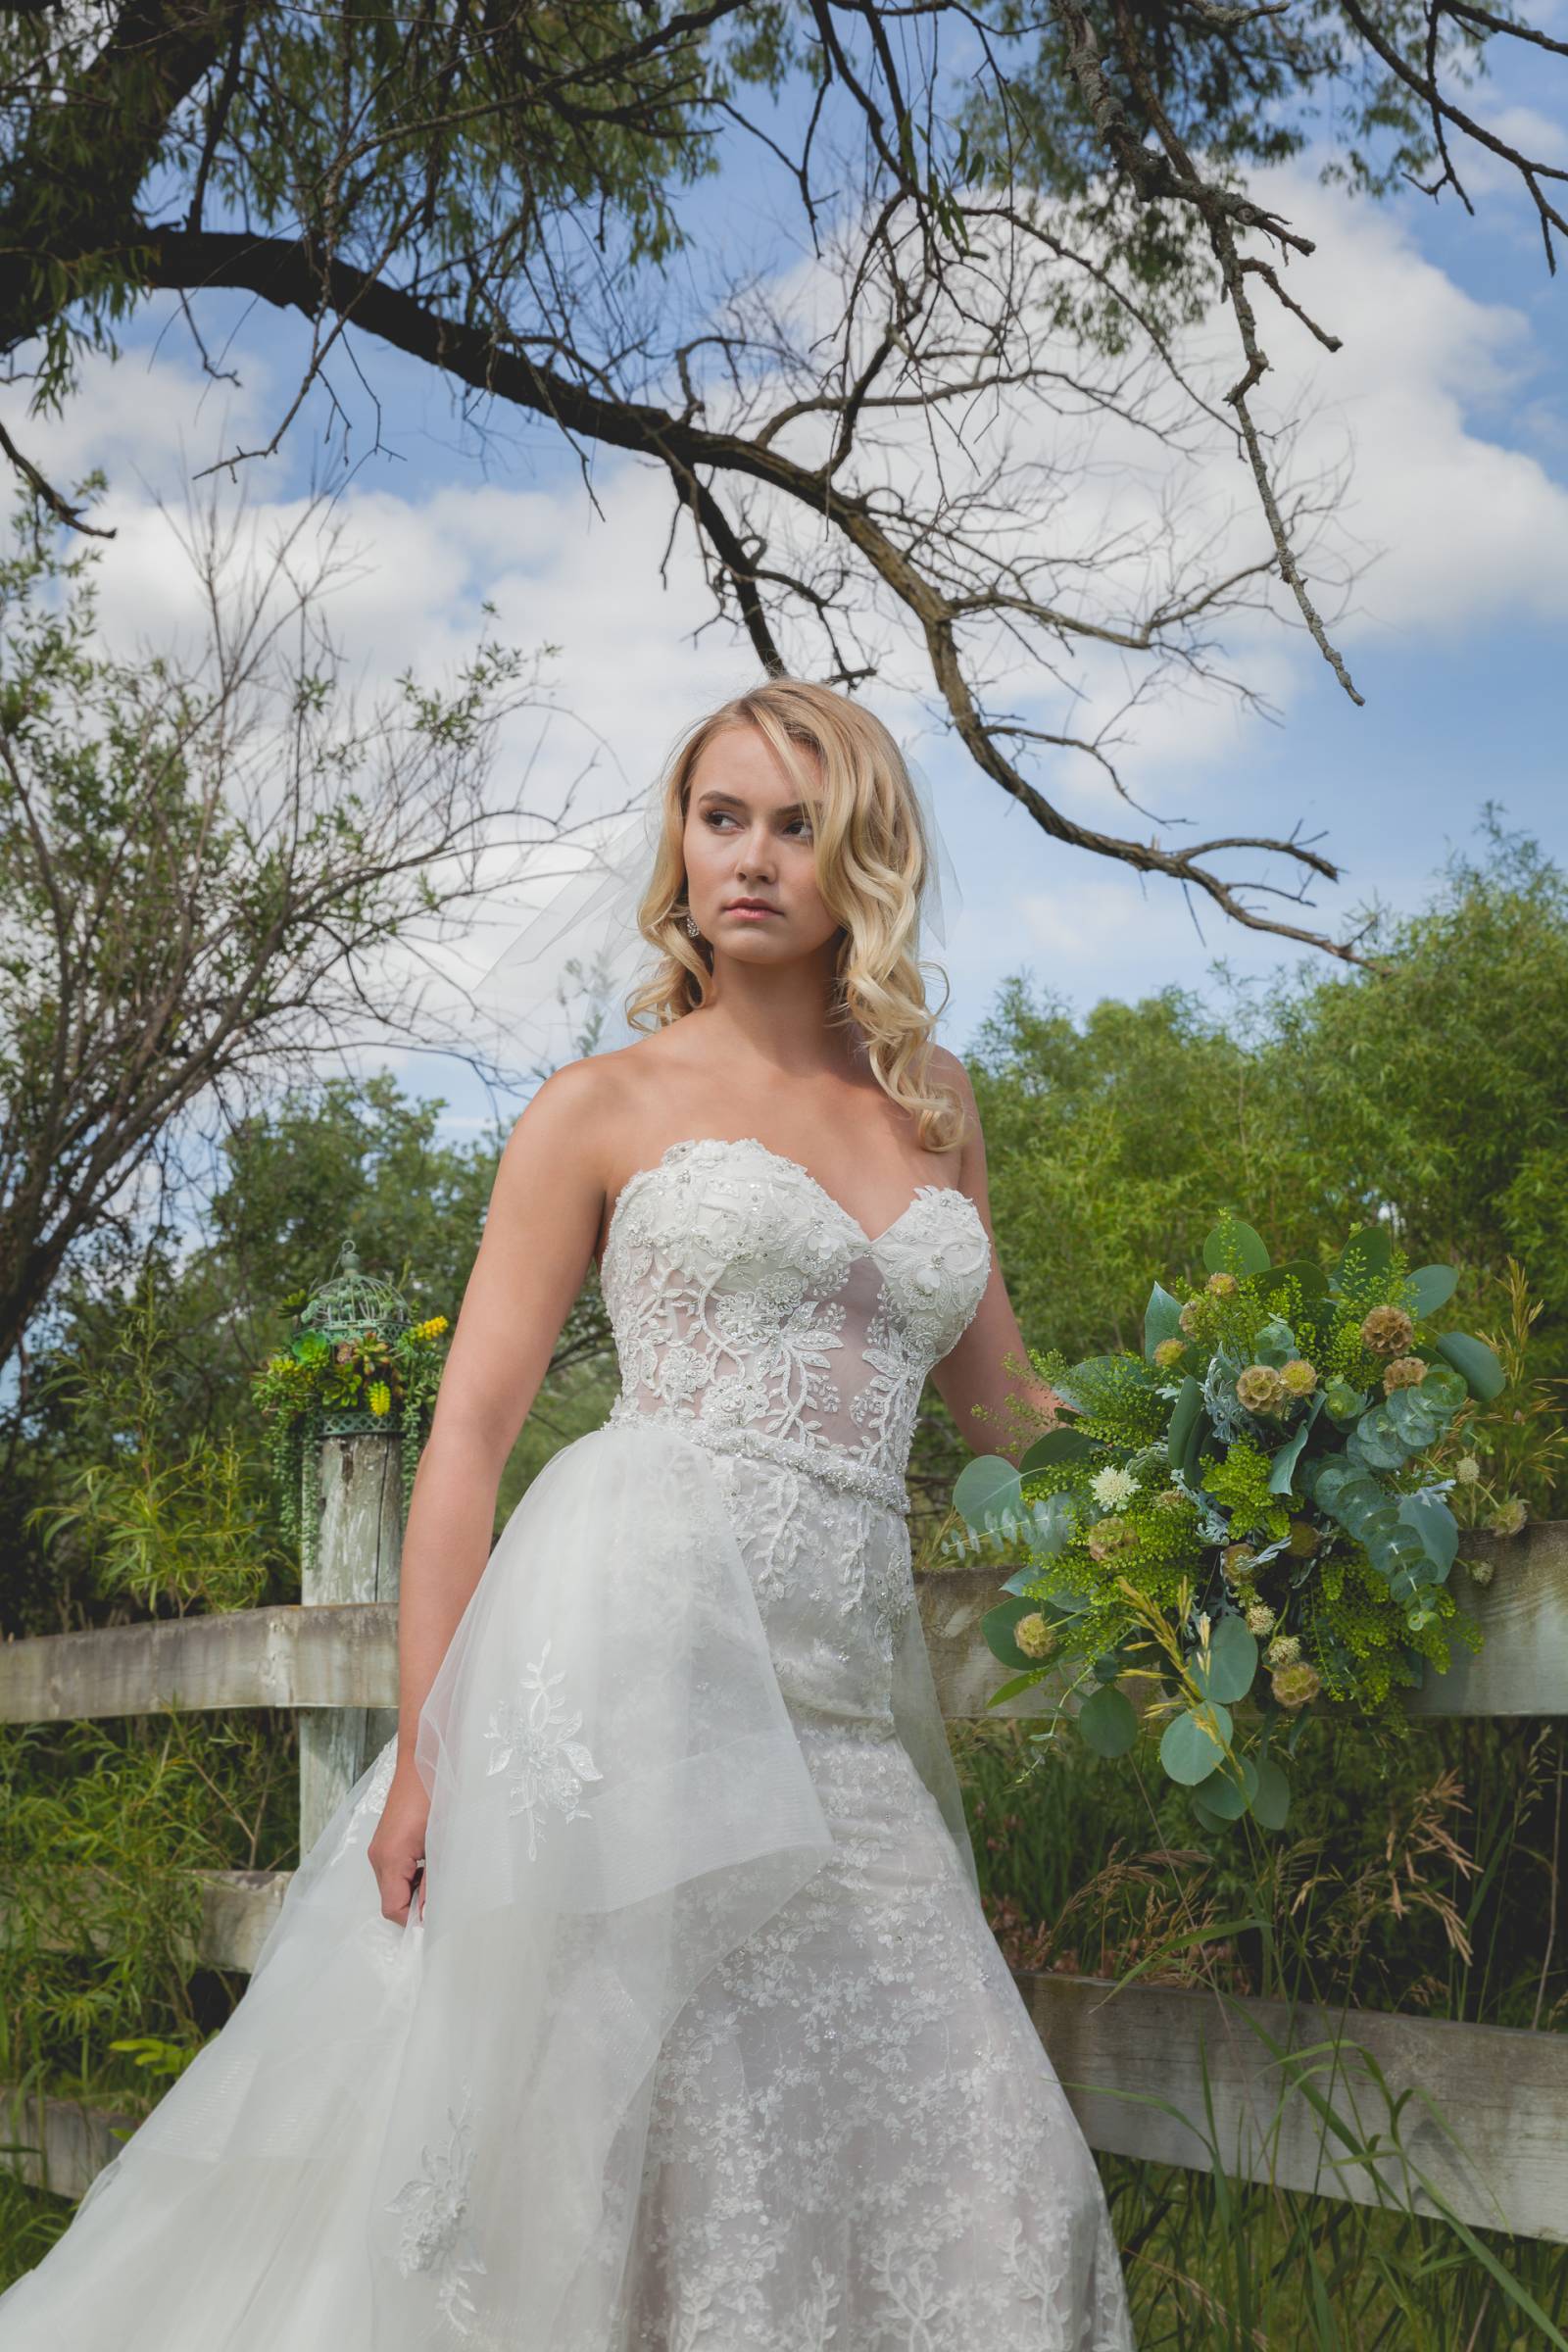 bridal dress, bridal gown, wedding dress, wedding gown, wedding fashion inspiration shoot, bridal sh